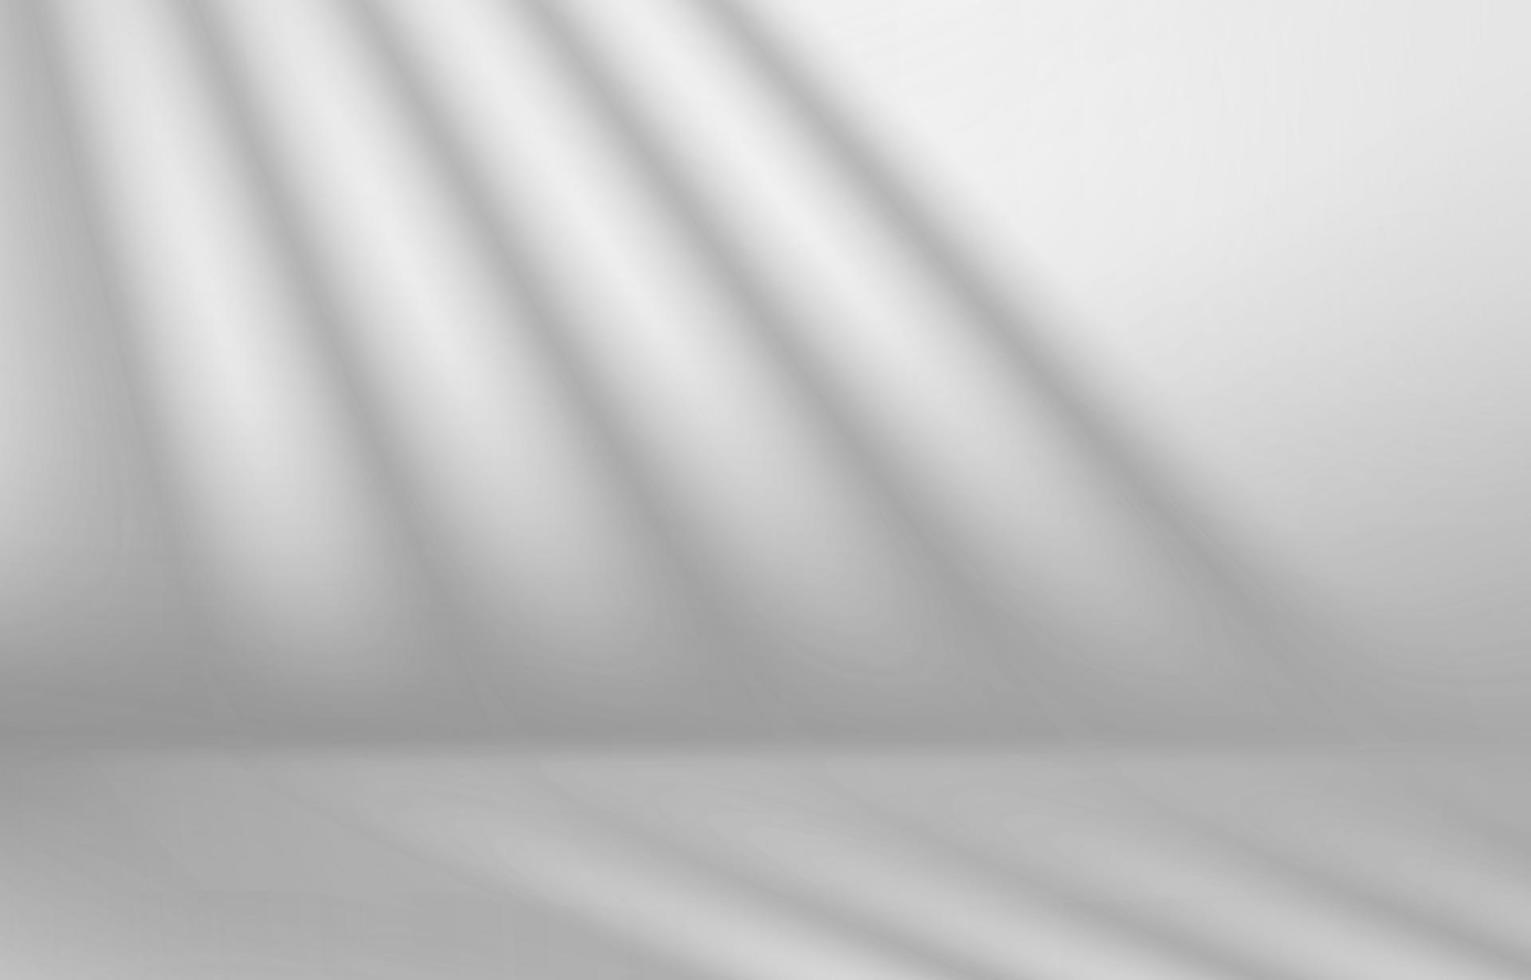 stanza bianca con ombre sul muro. illustrazione vettoriale 3d realistica con effetto di sovrapposizione ombra